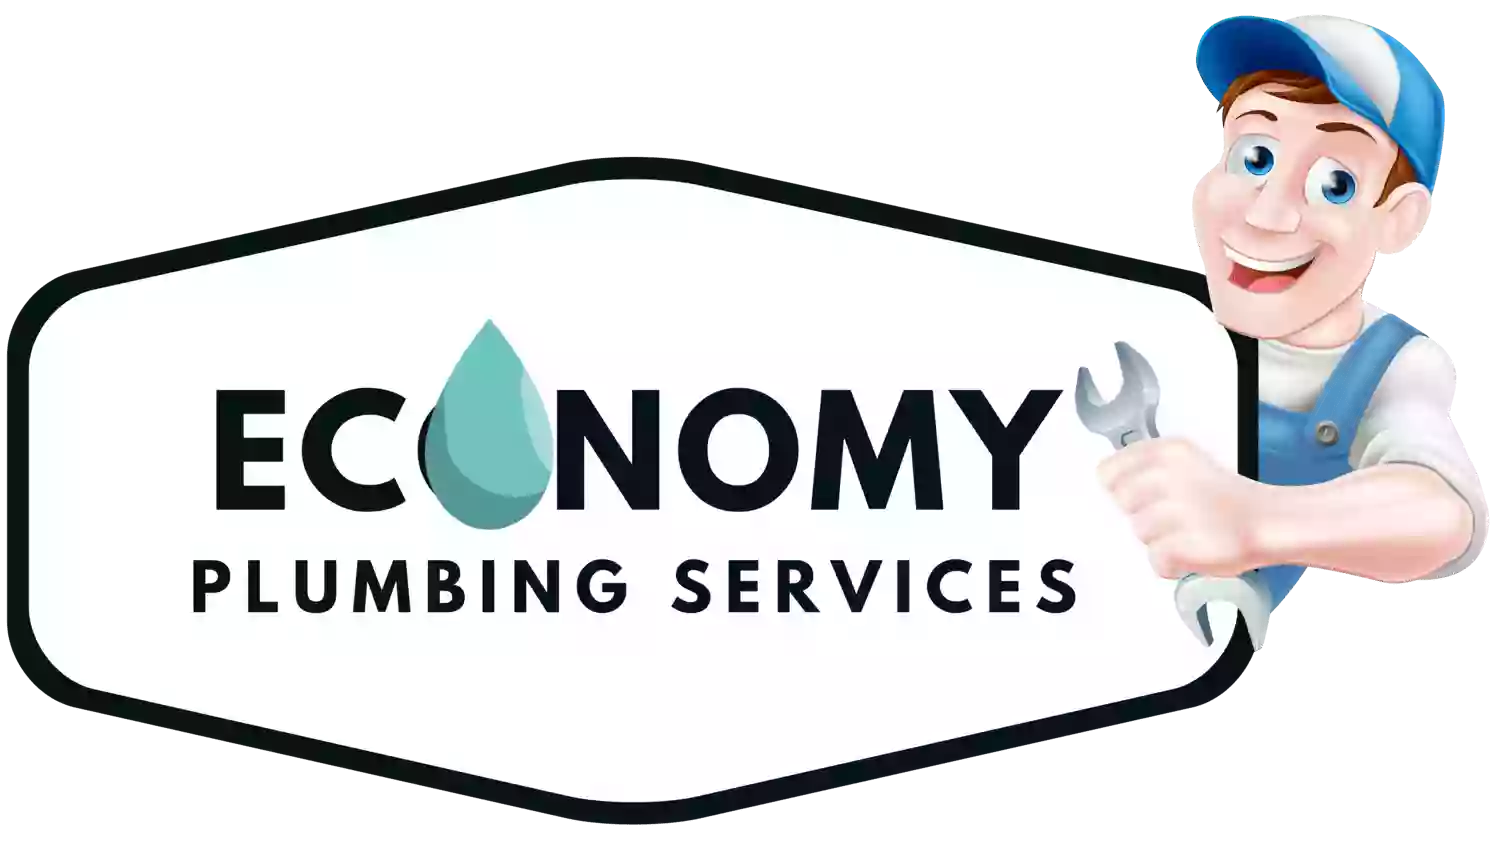 Economy Plumbing Services, LLC